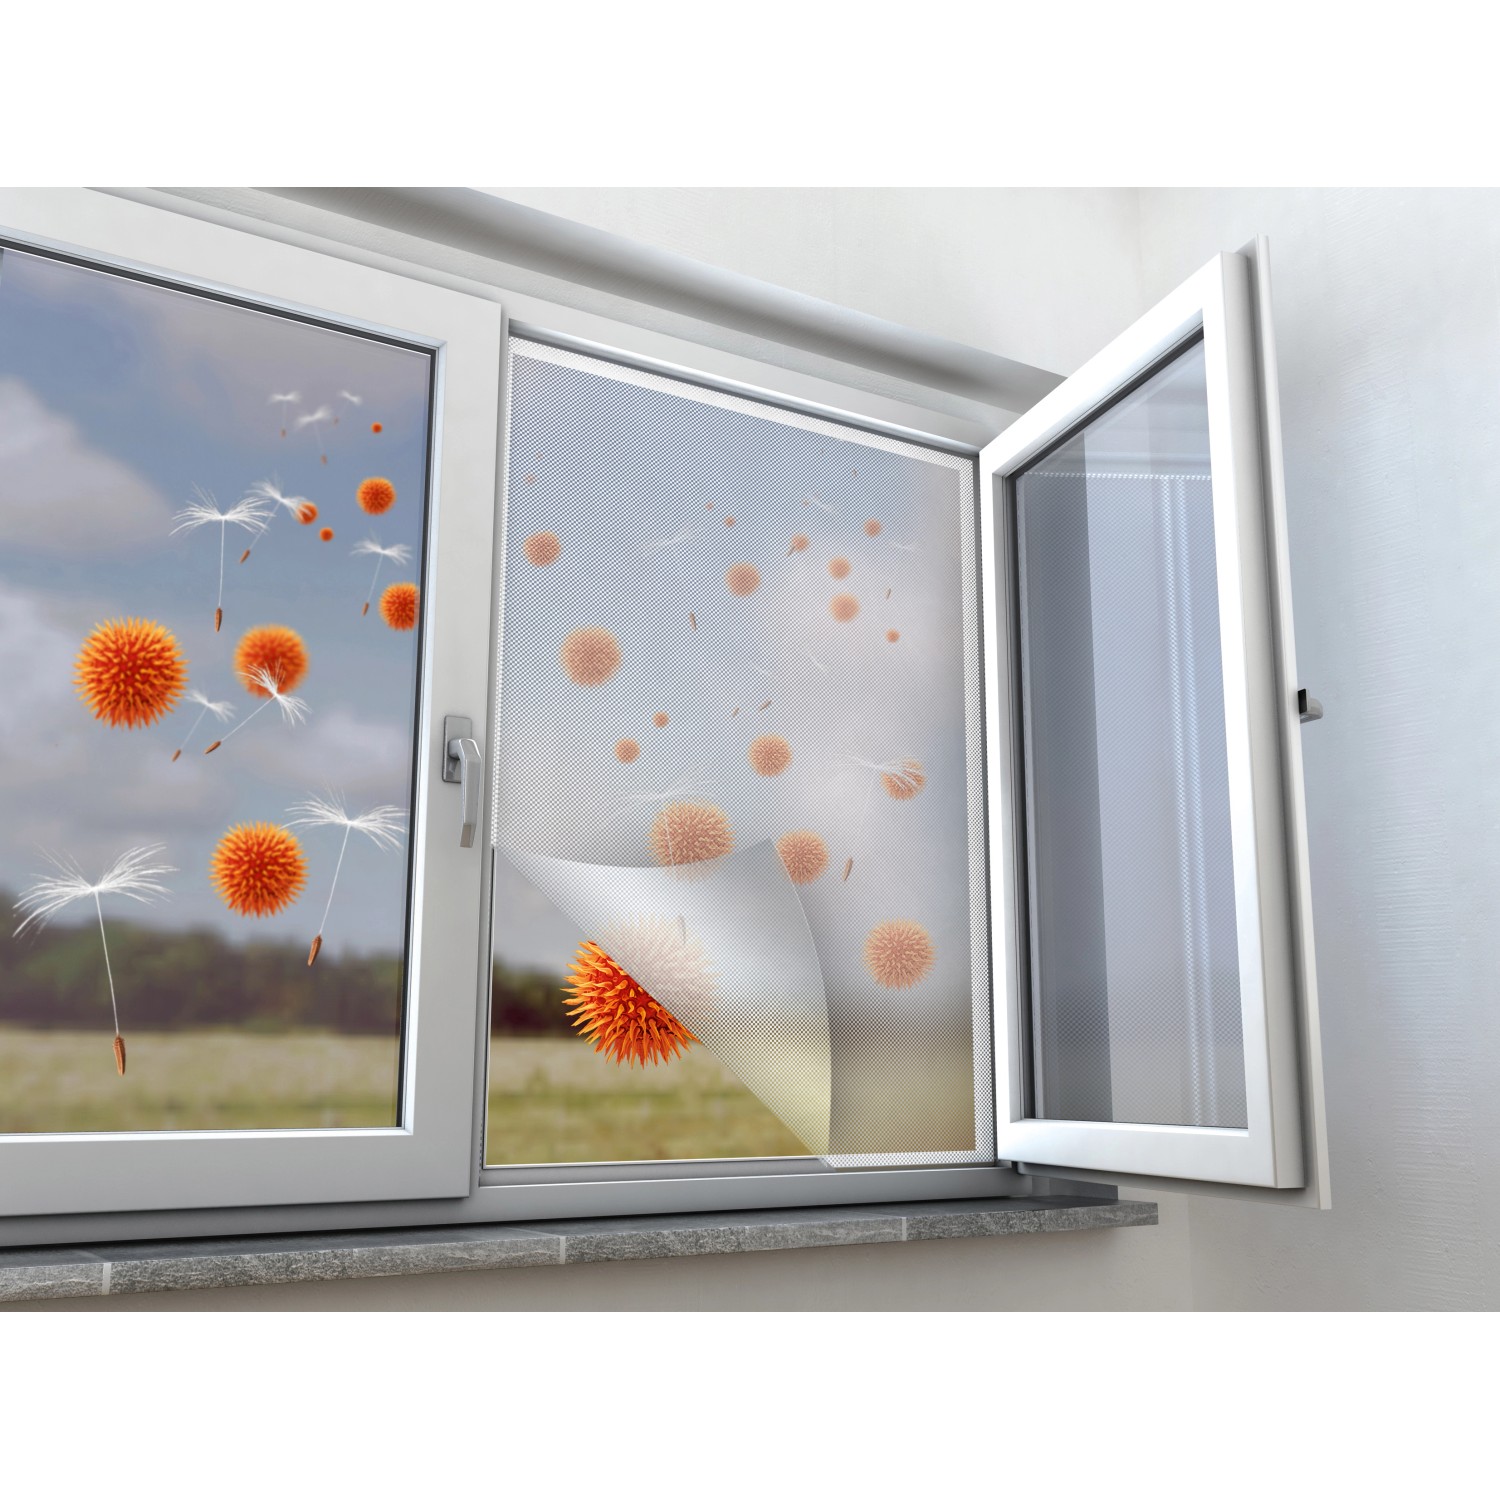 Pollenschutznetz Fenster Anthrazit 130 x 150 cm